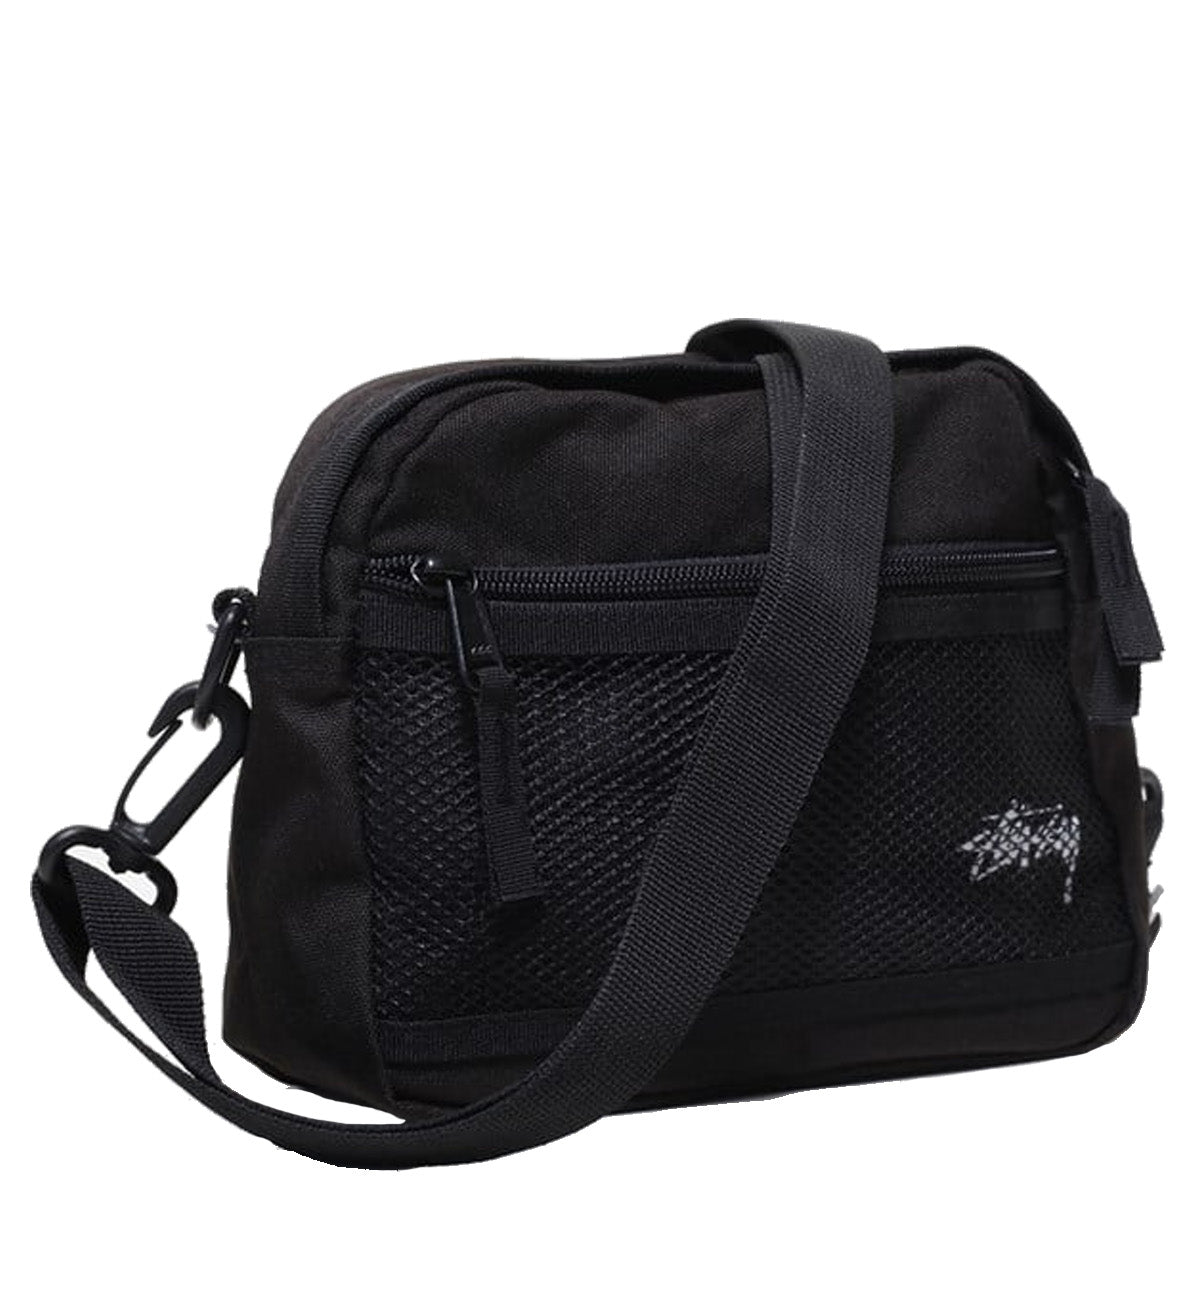 Stussy - Middle Sling Bag in Black